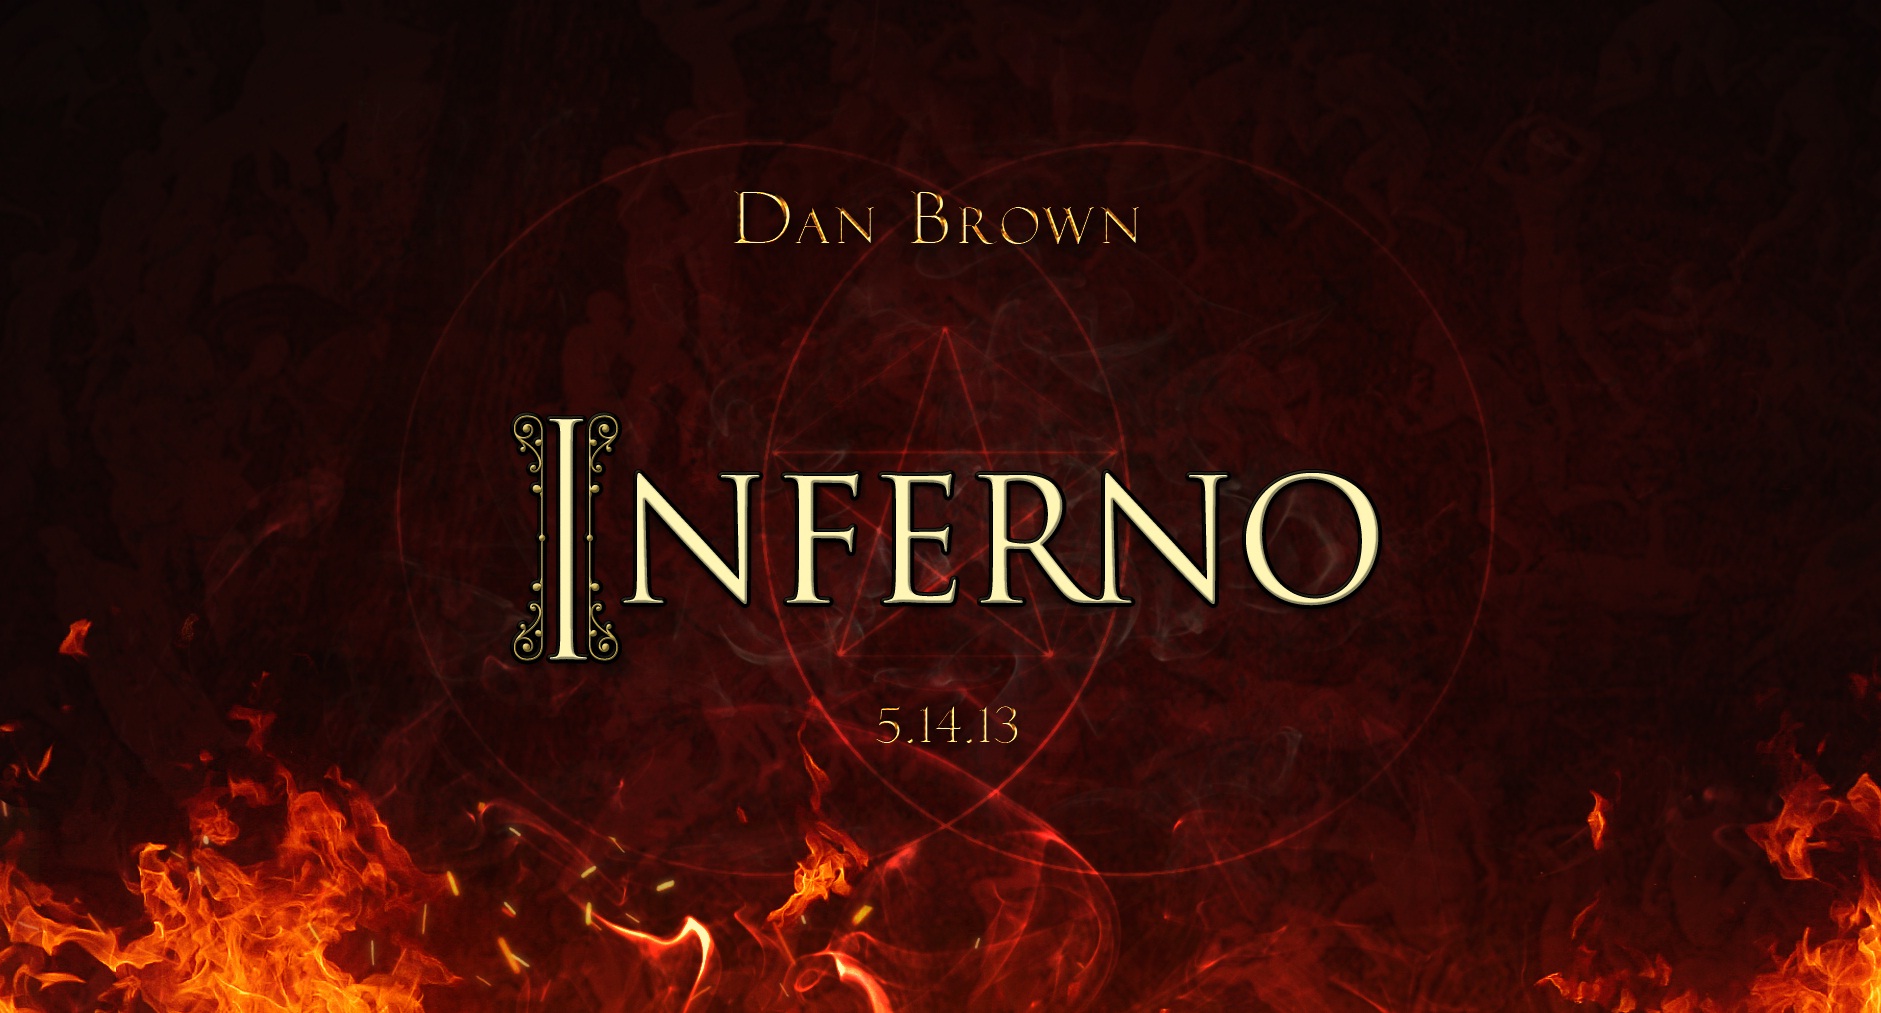 O Livro “Inferno” de Dan Brown